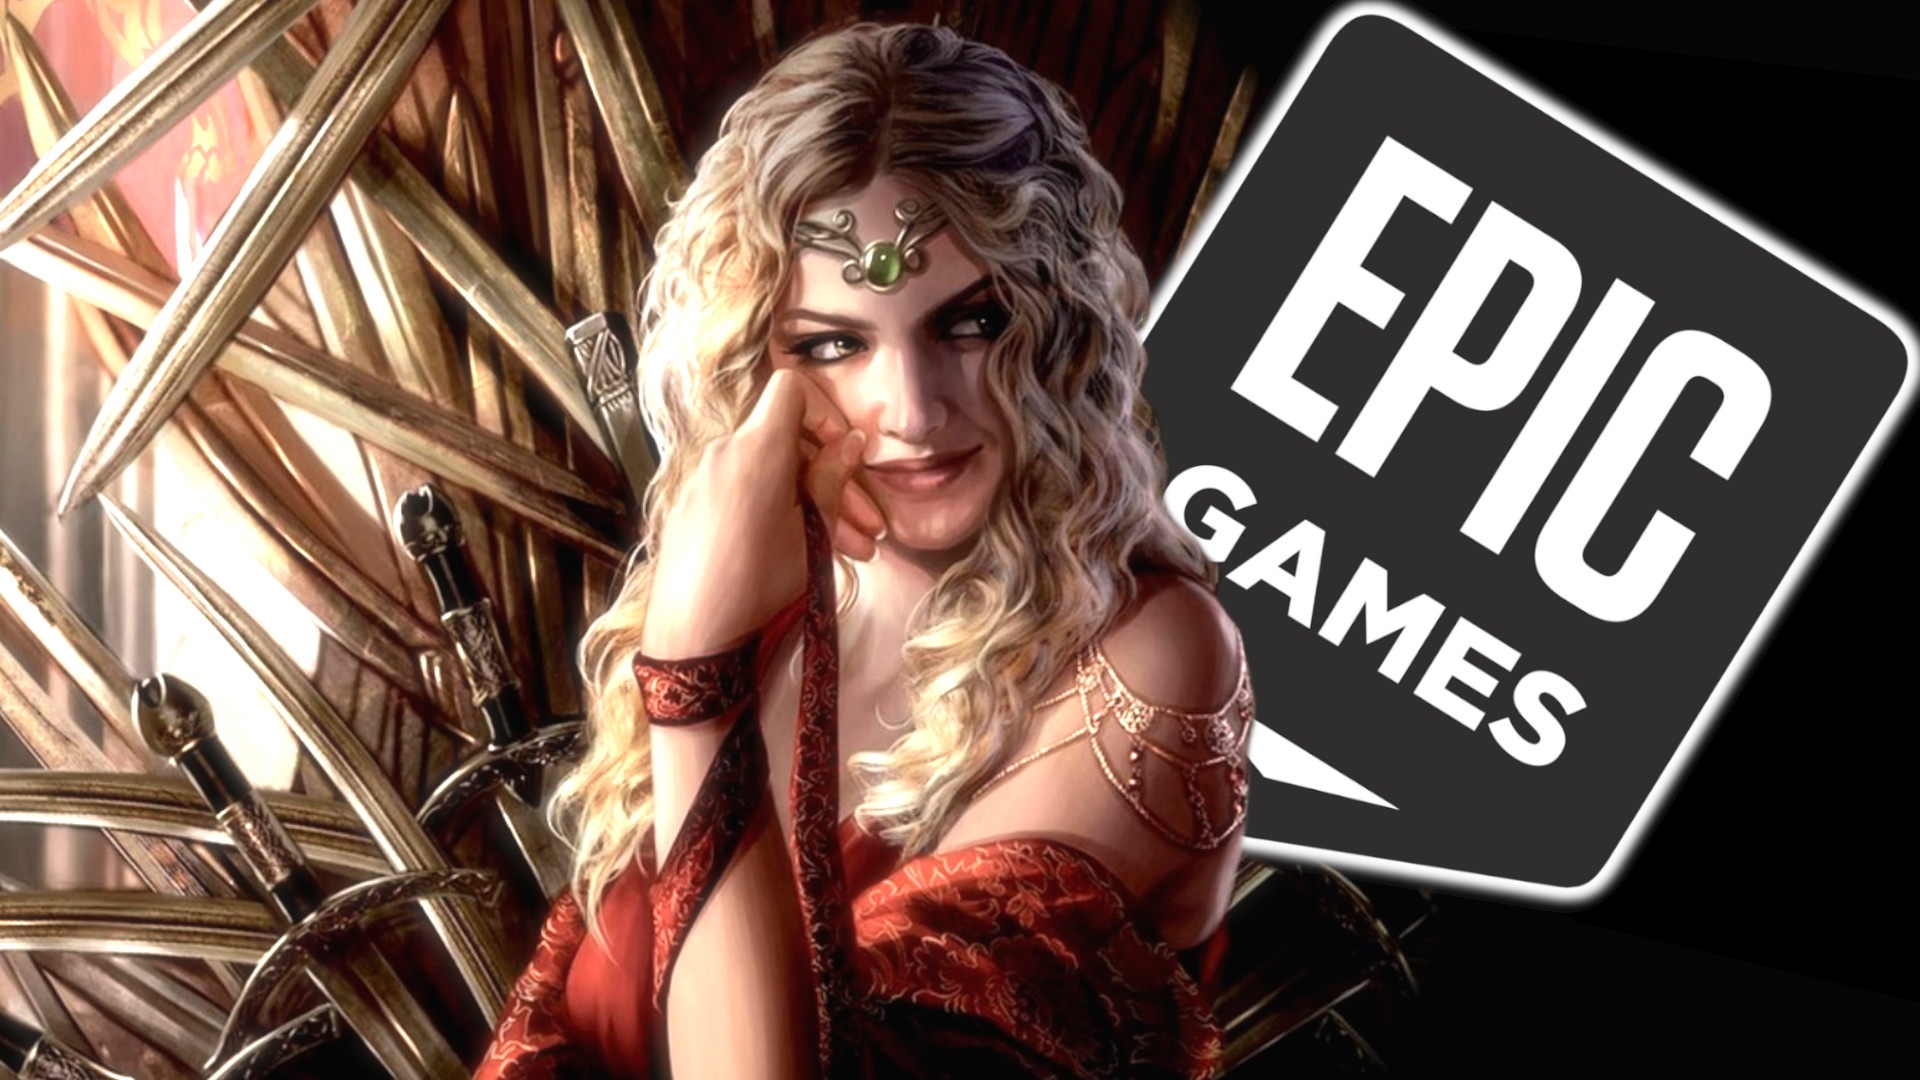 #Gratis bei Epic – Für wen lohnen sich die zwei kostenlosen Spiele?